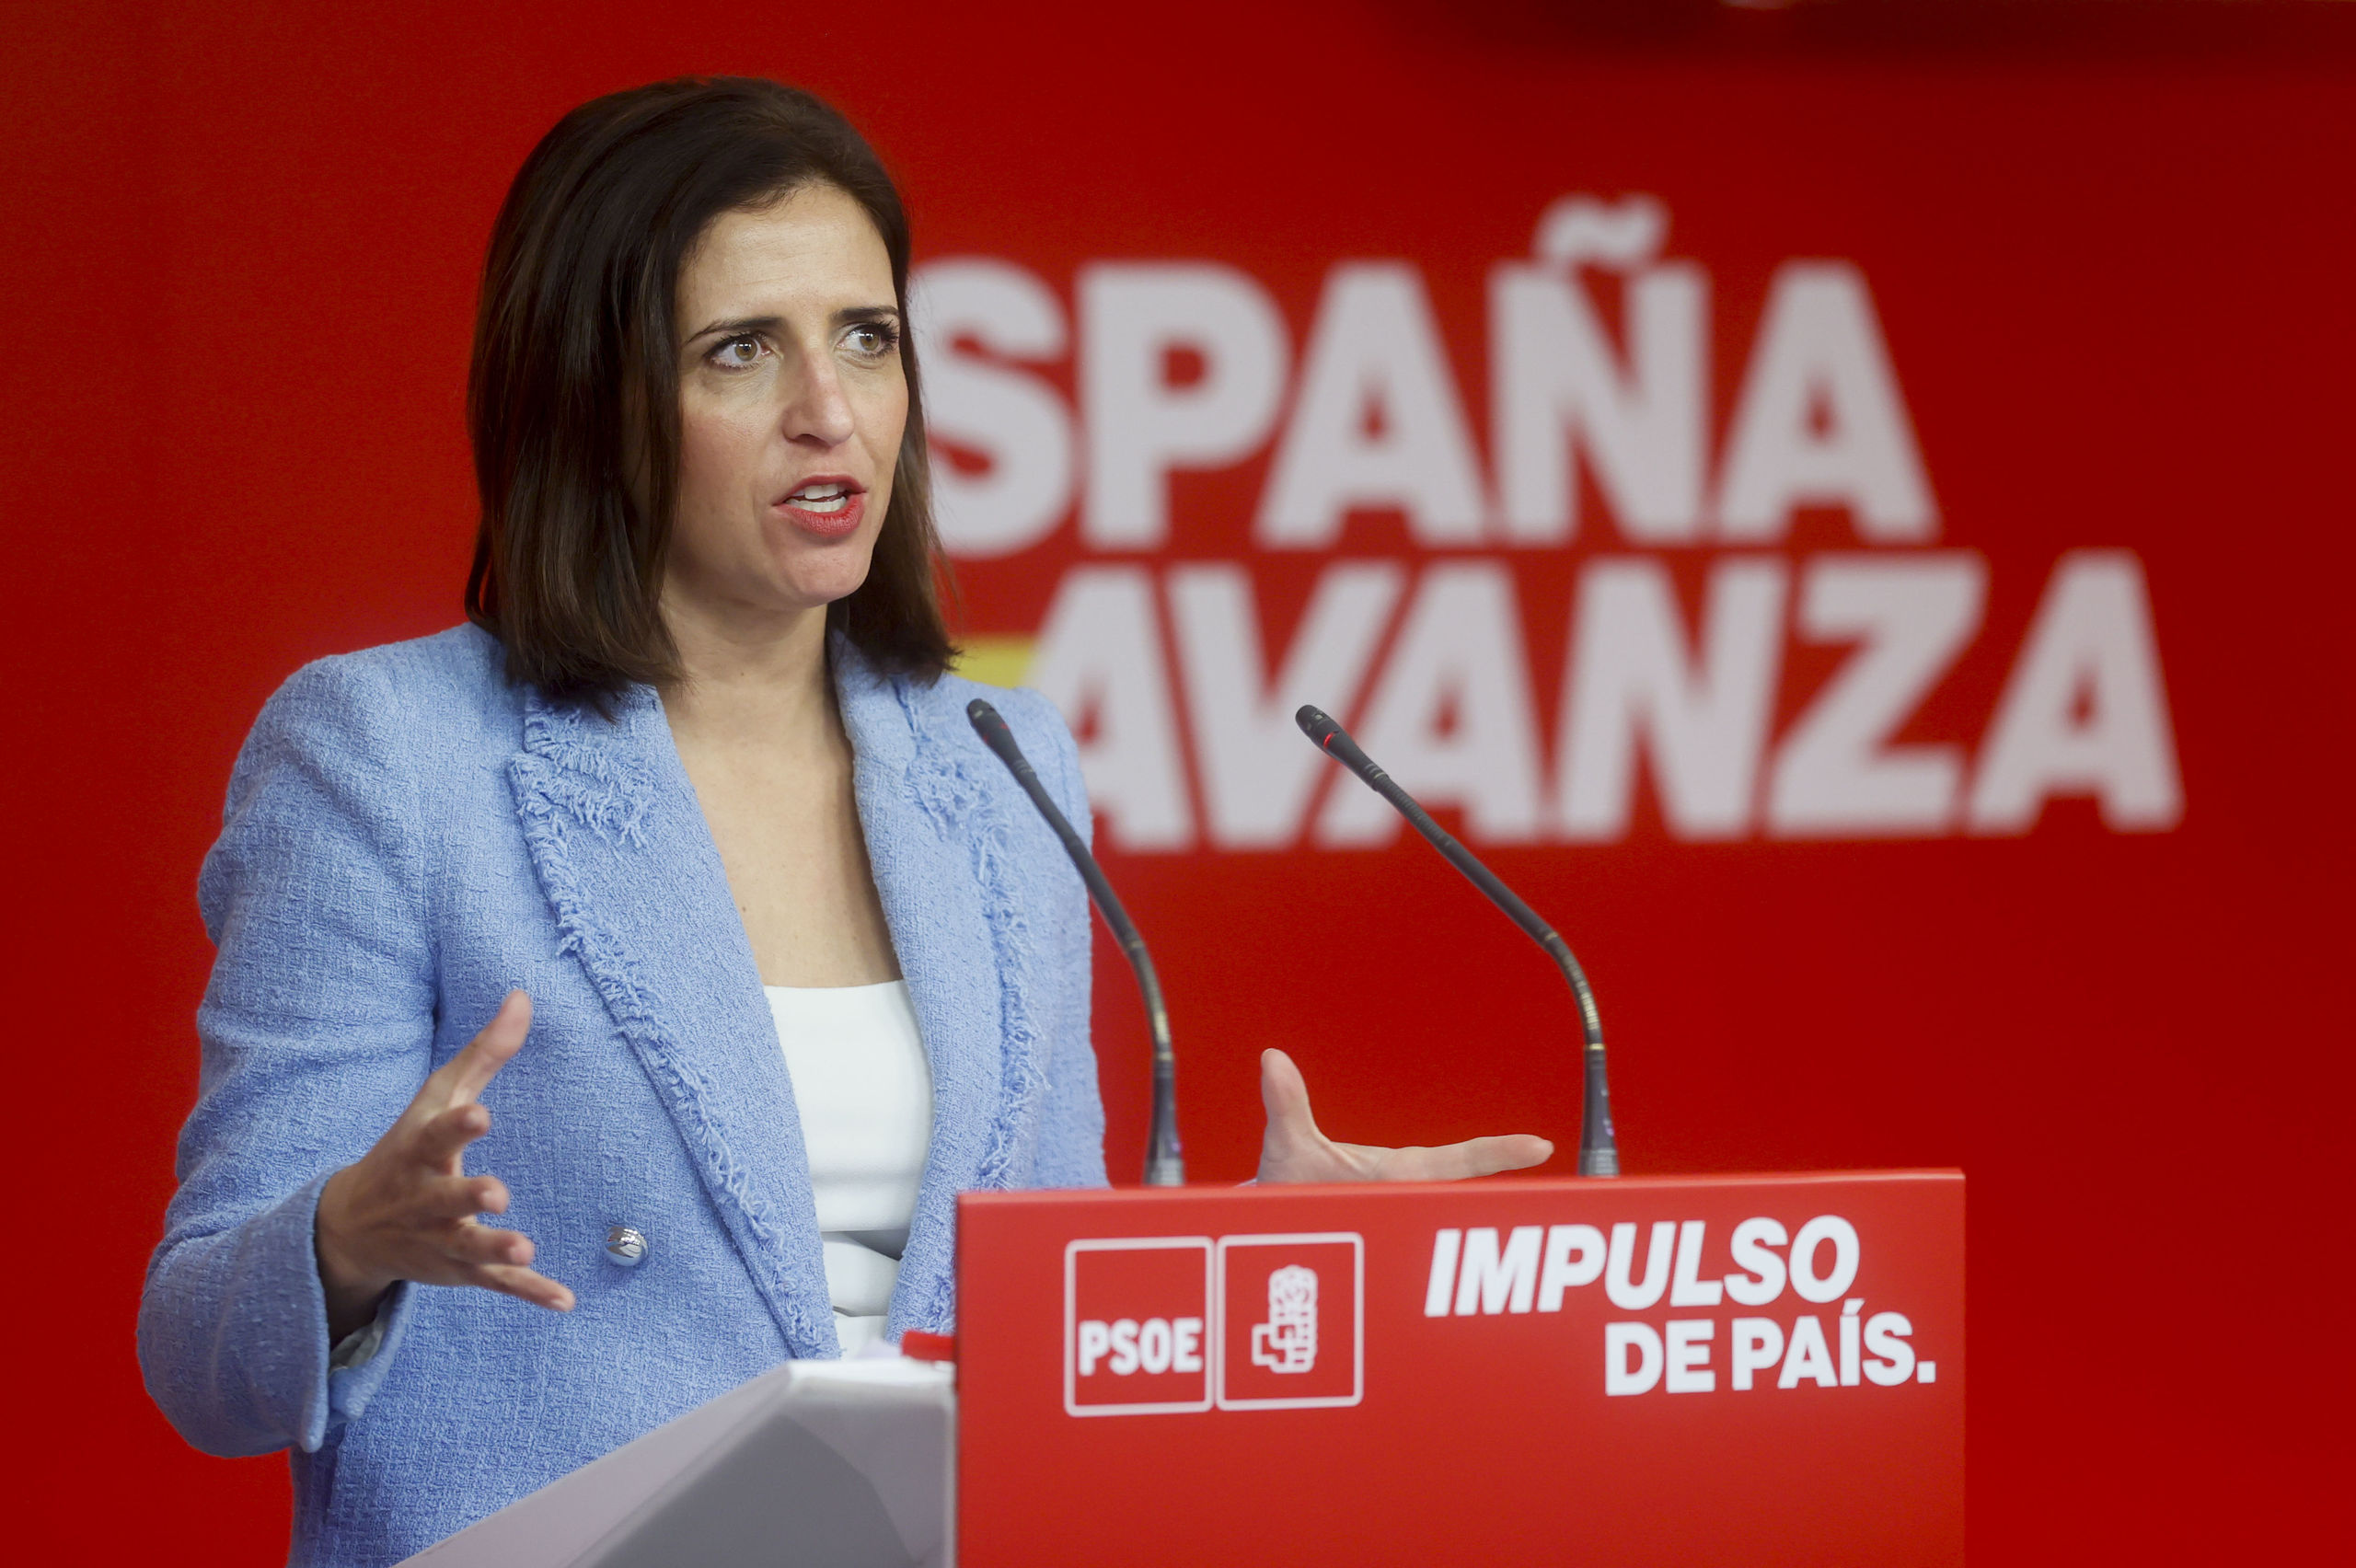 La nueva portavoz del PSOE se estrena pidiendo "incorporar" a los que "se fueron en 2017", en referencia a Puigdemont